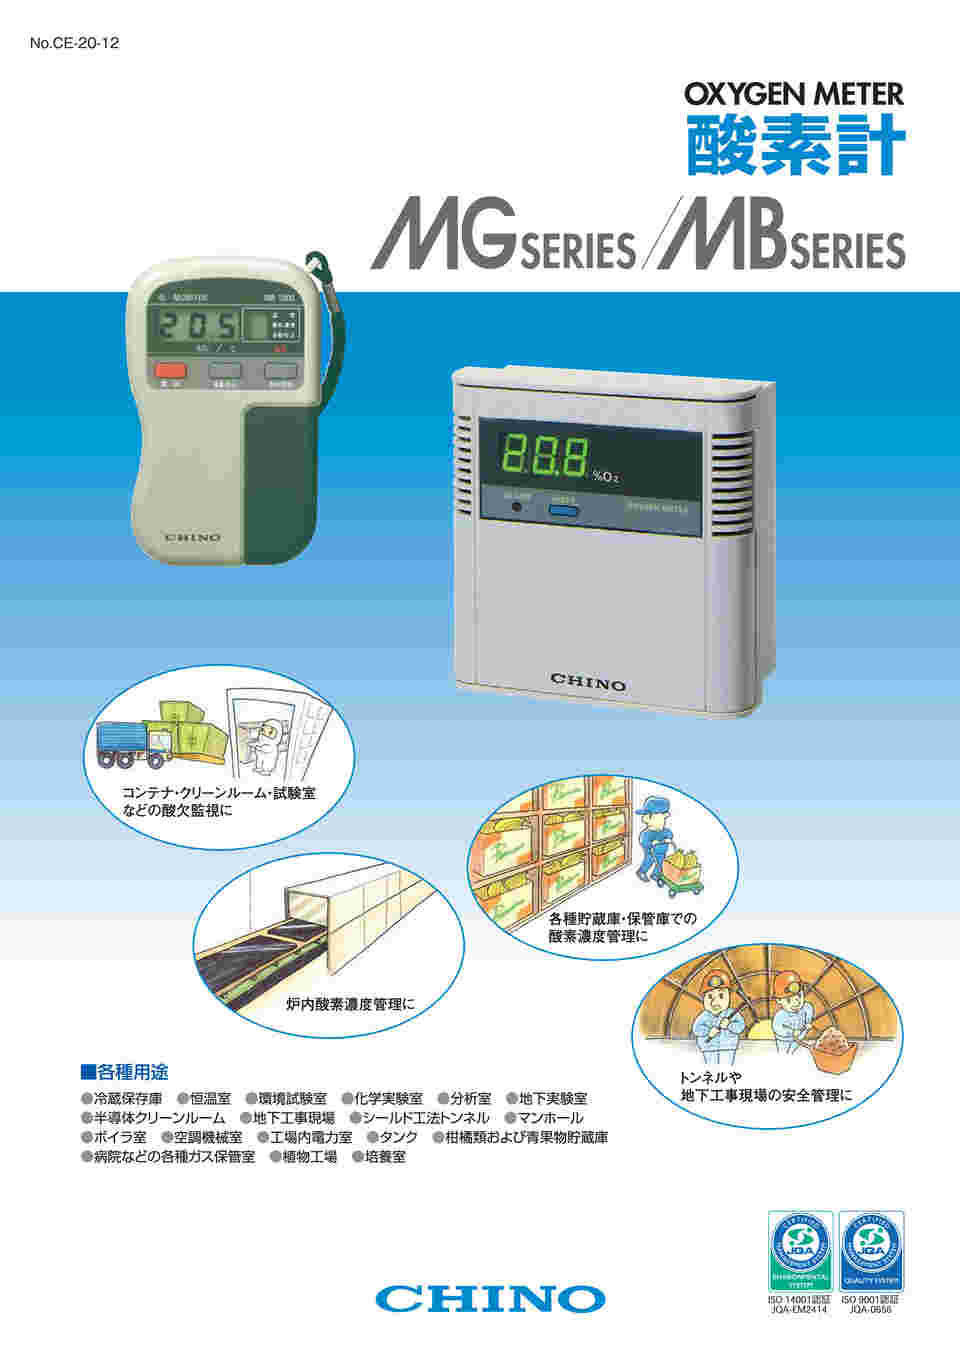 67-4915-78 MG3010series 1点計測用モニタ（受信：4～20mA、酸欠計